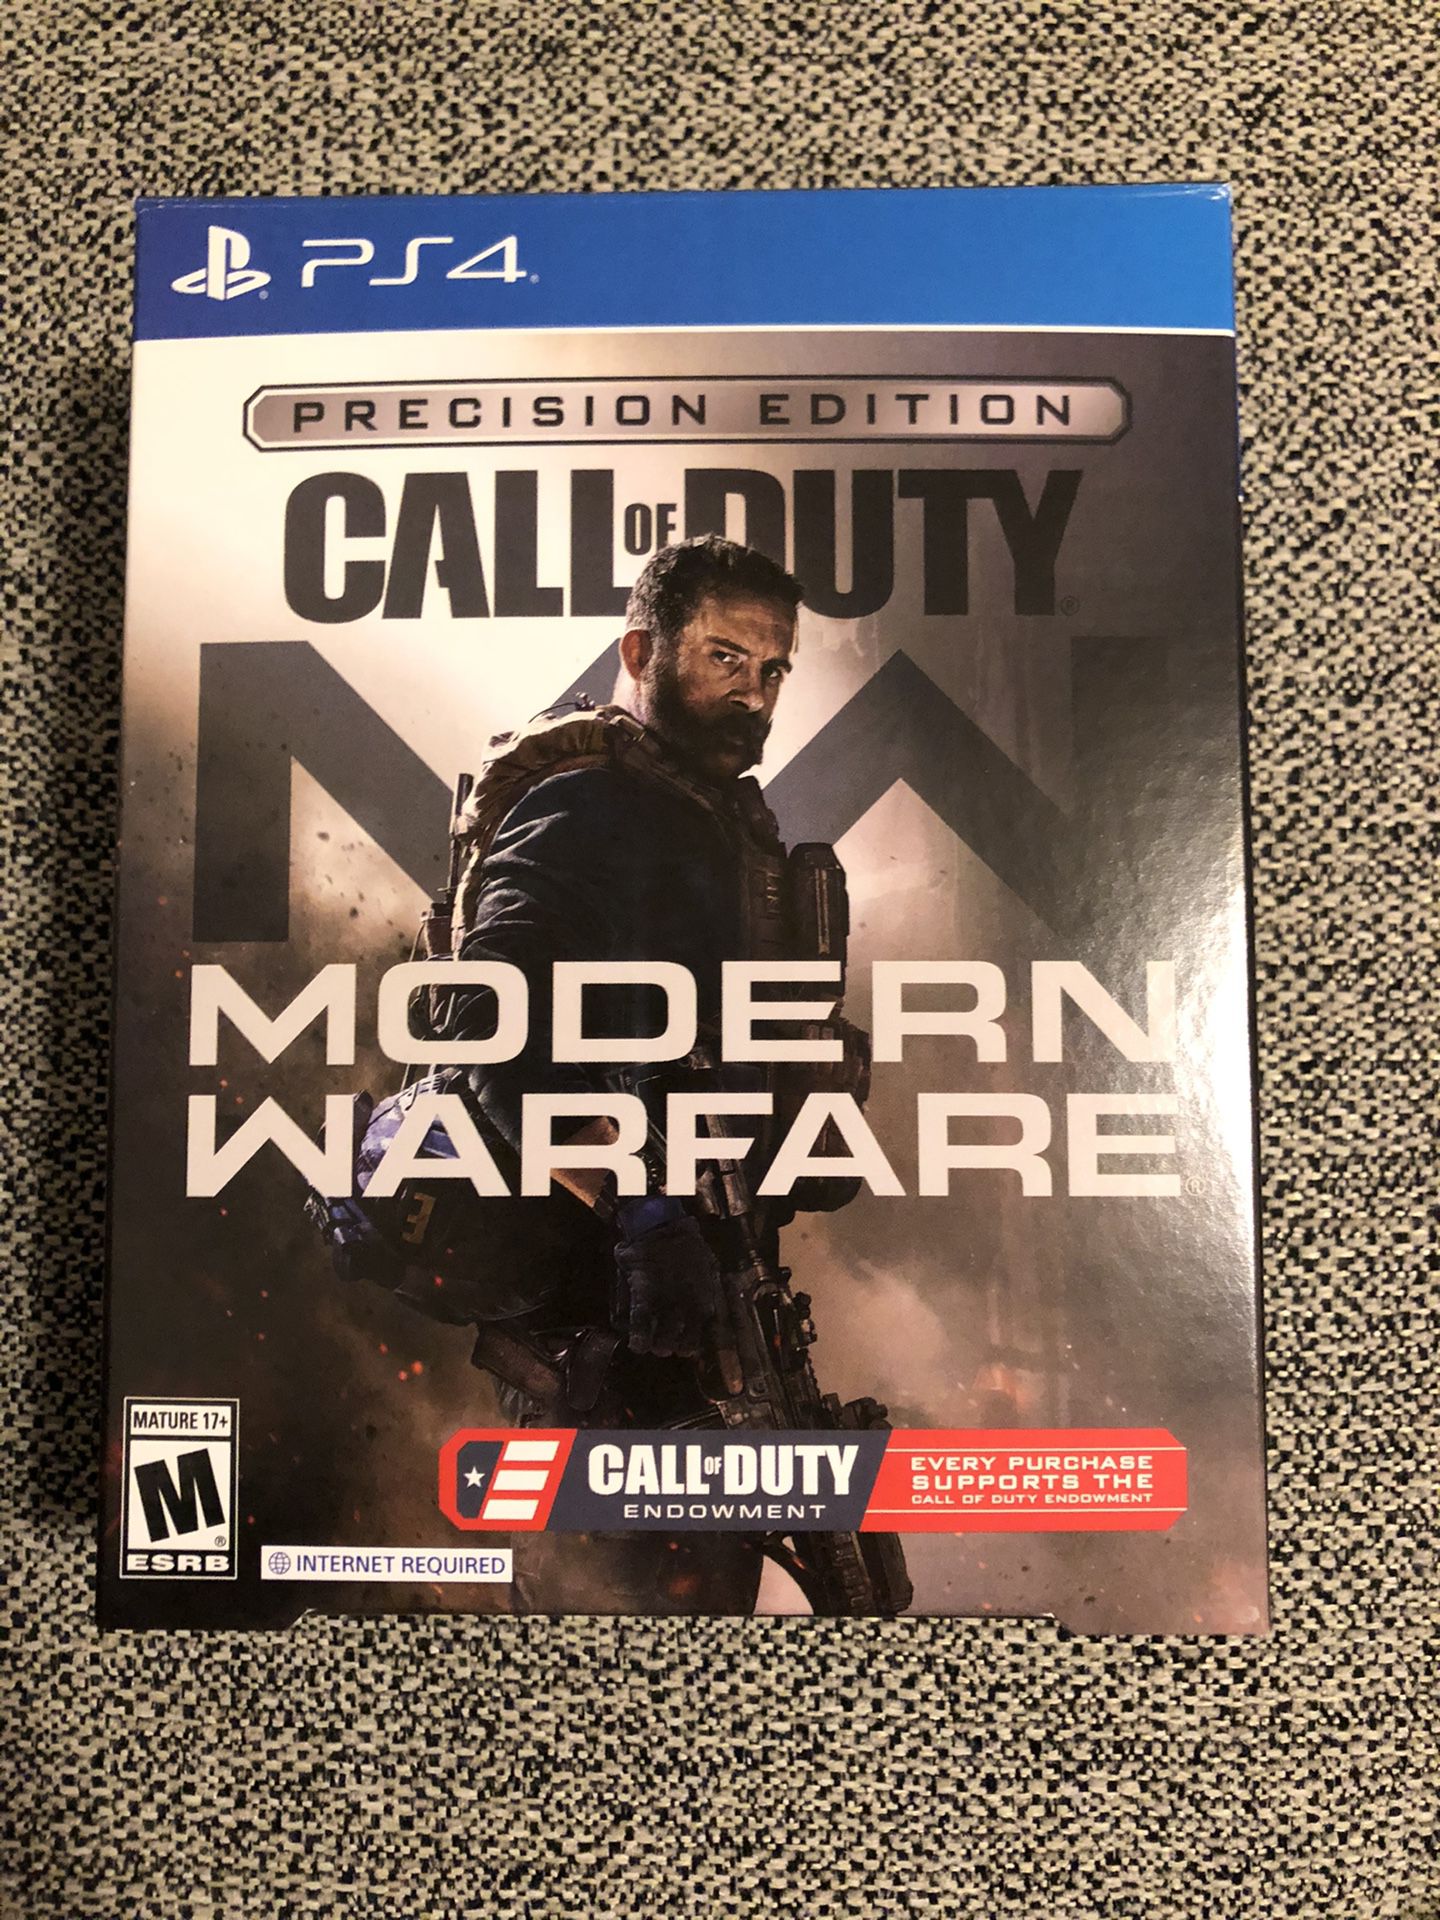 PS4 call of duty modern warfare